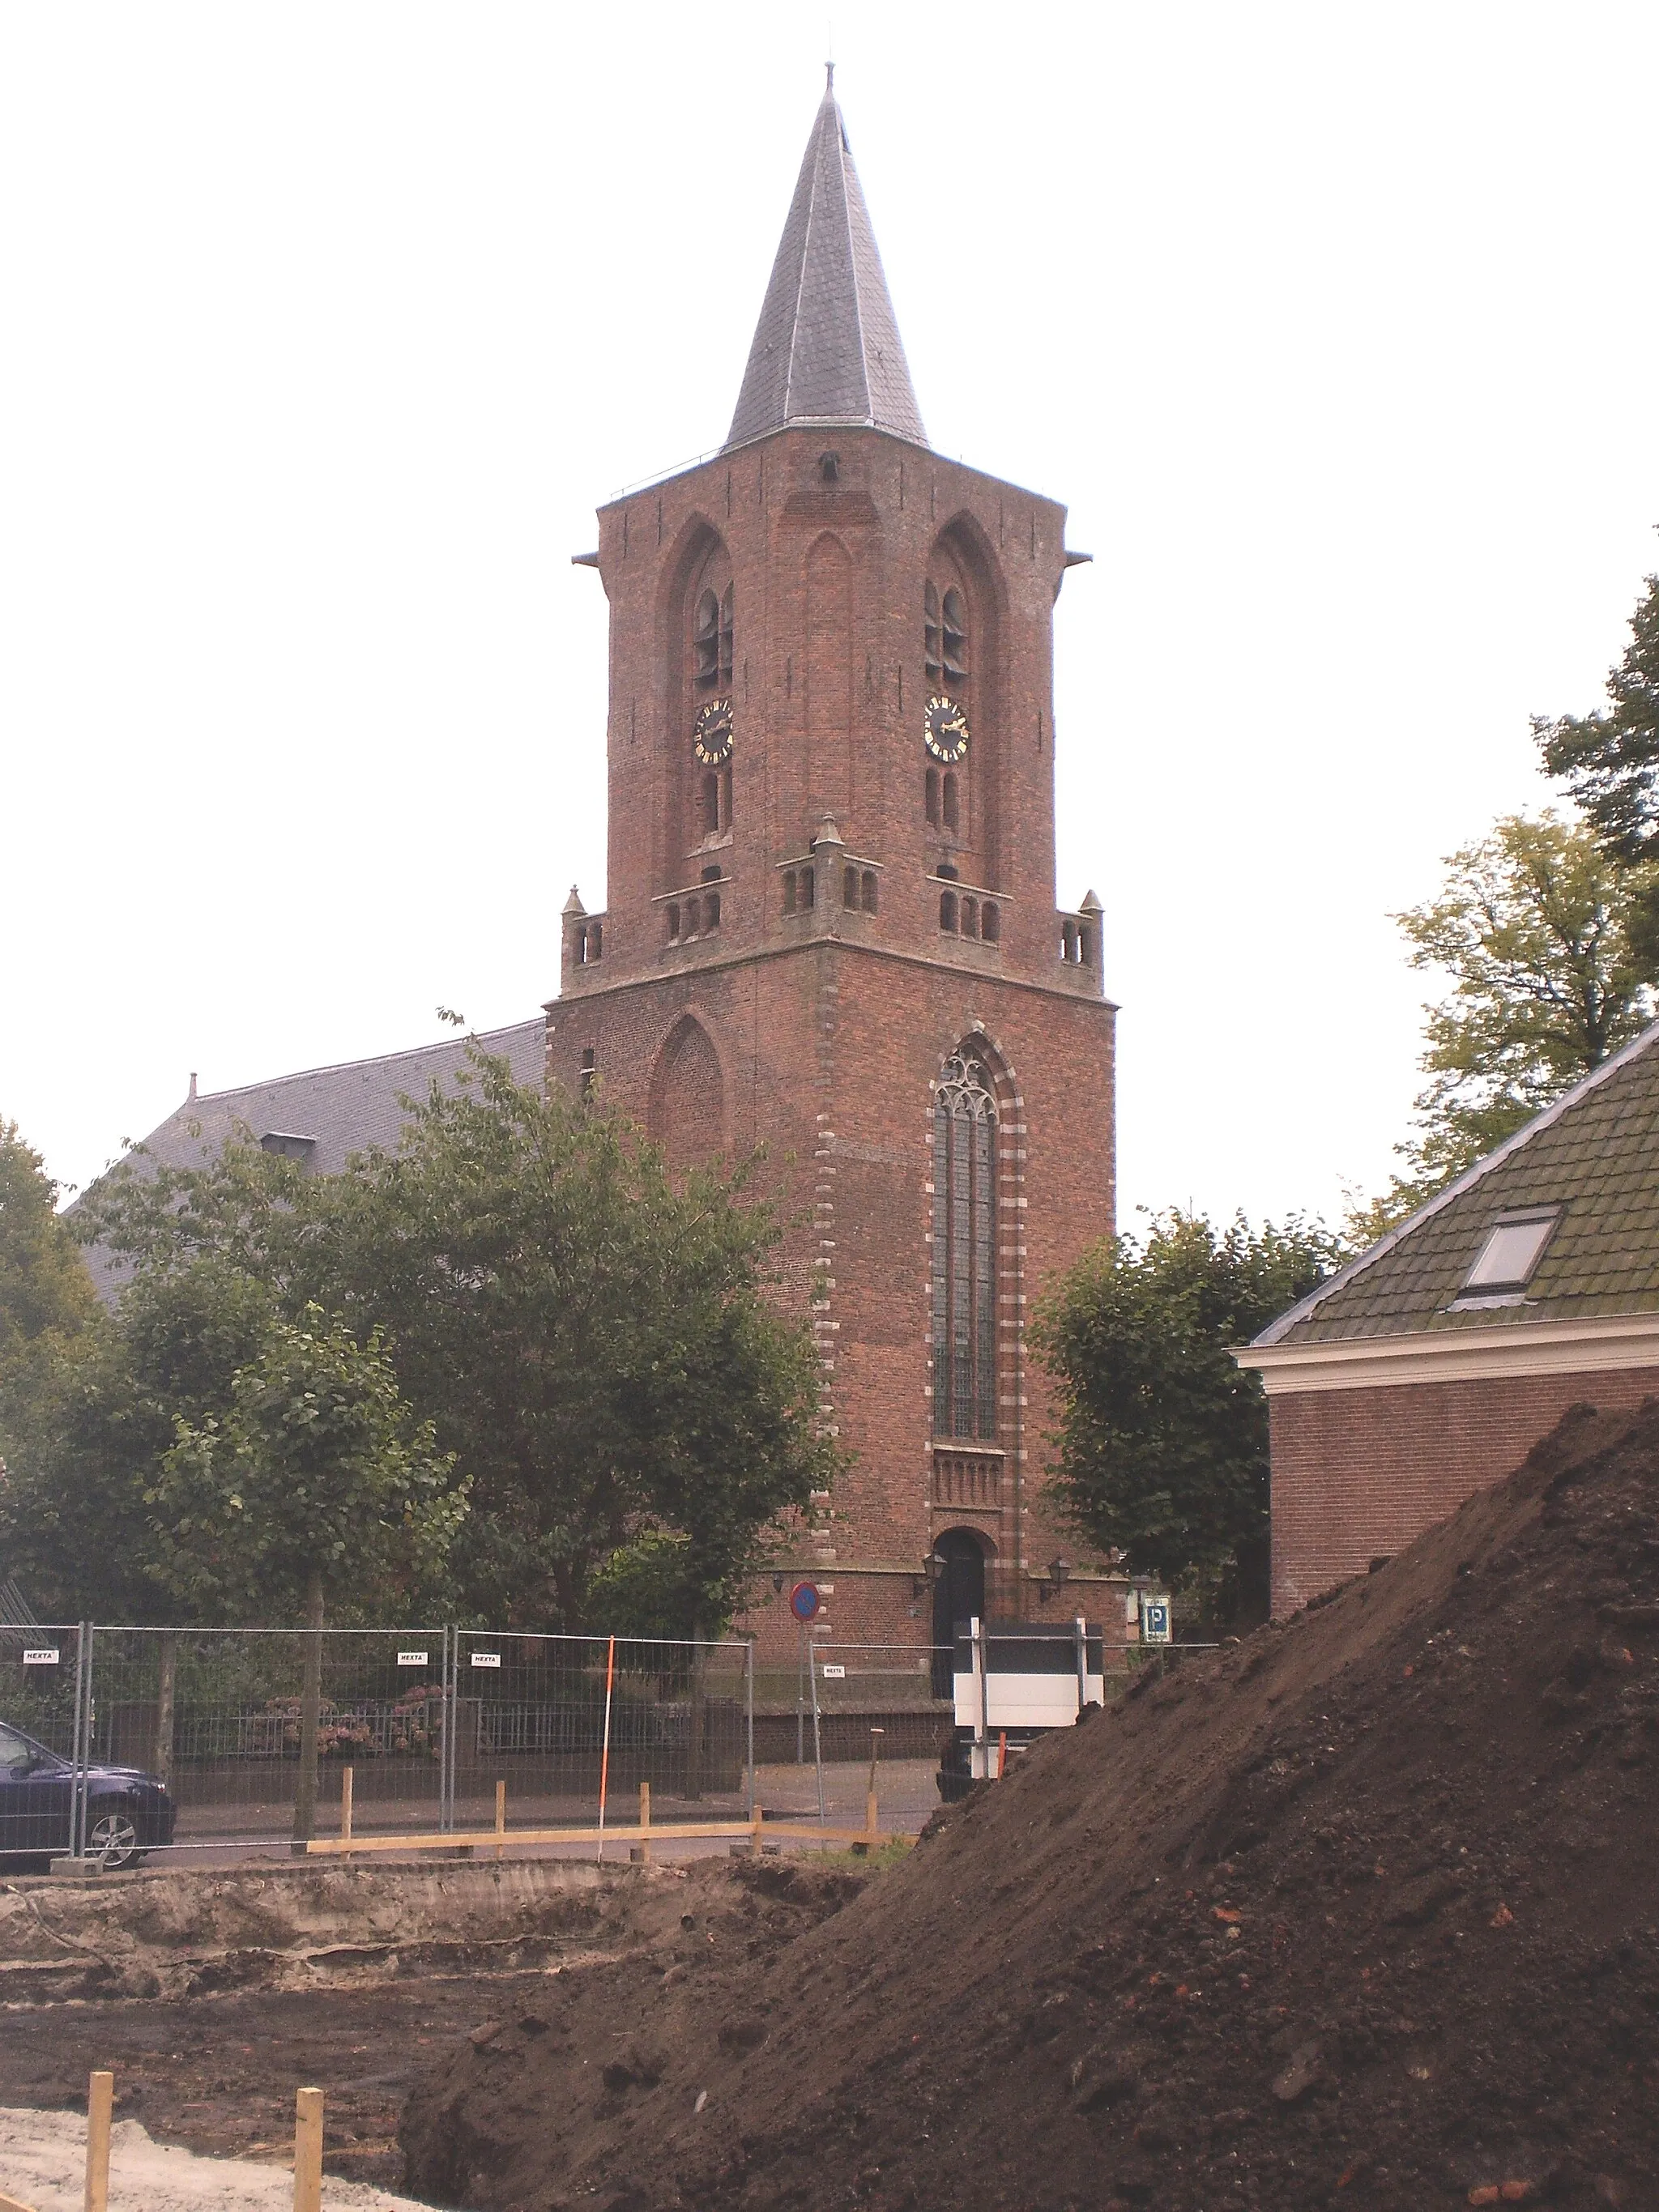 Image of Utrecht